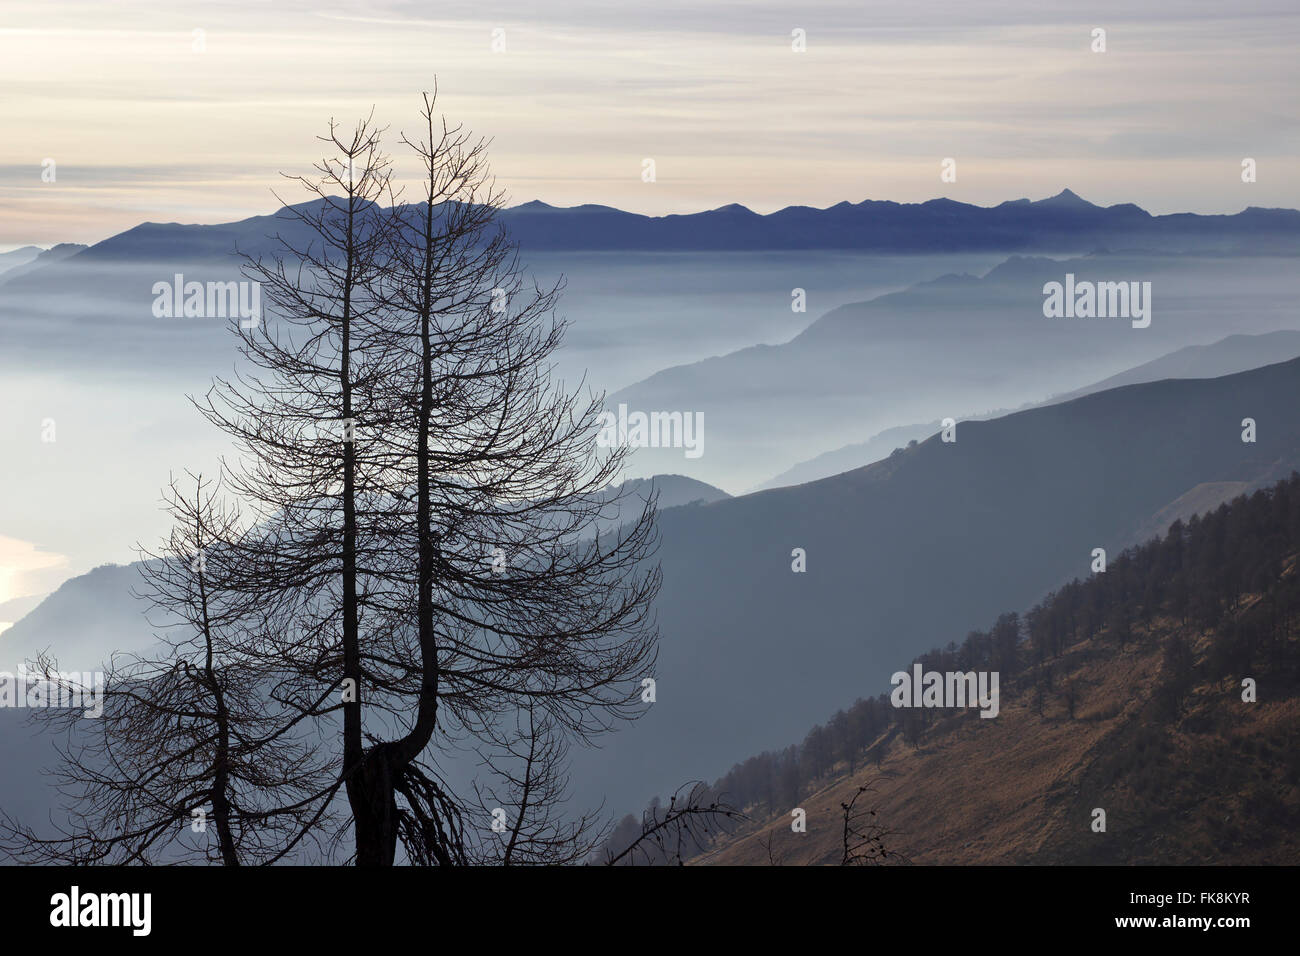 Baum, Nebel und Bergen, am Monte Berlinghera, in der Nähe von Gera Lario am Comer See, Italien Stockfoto